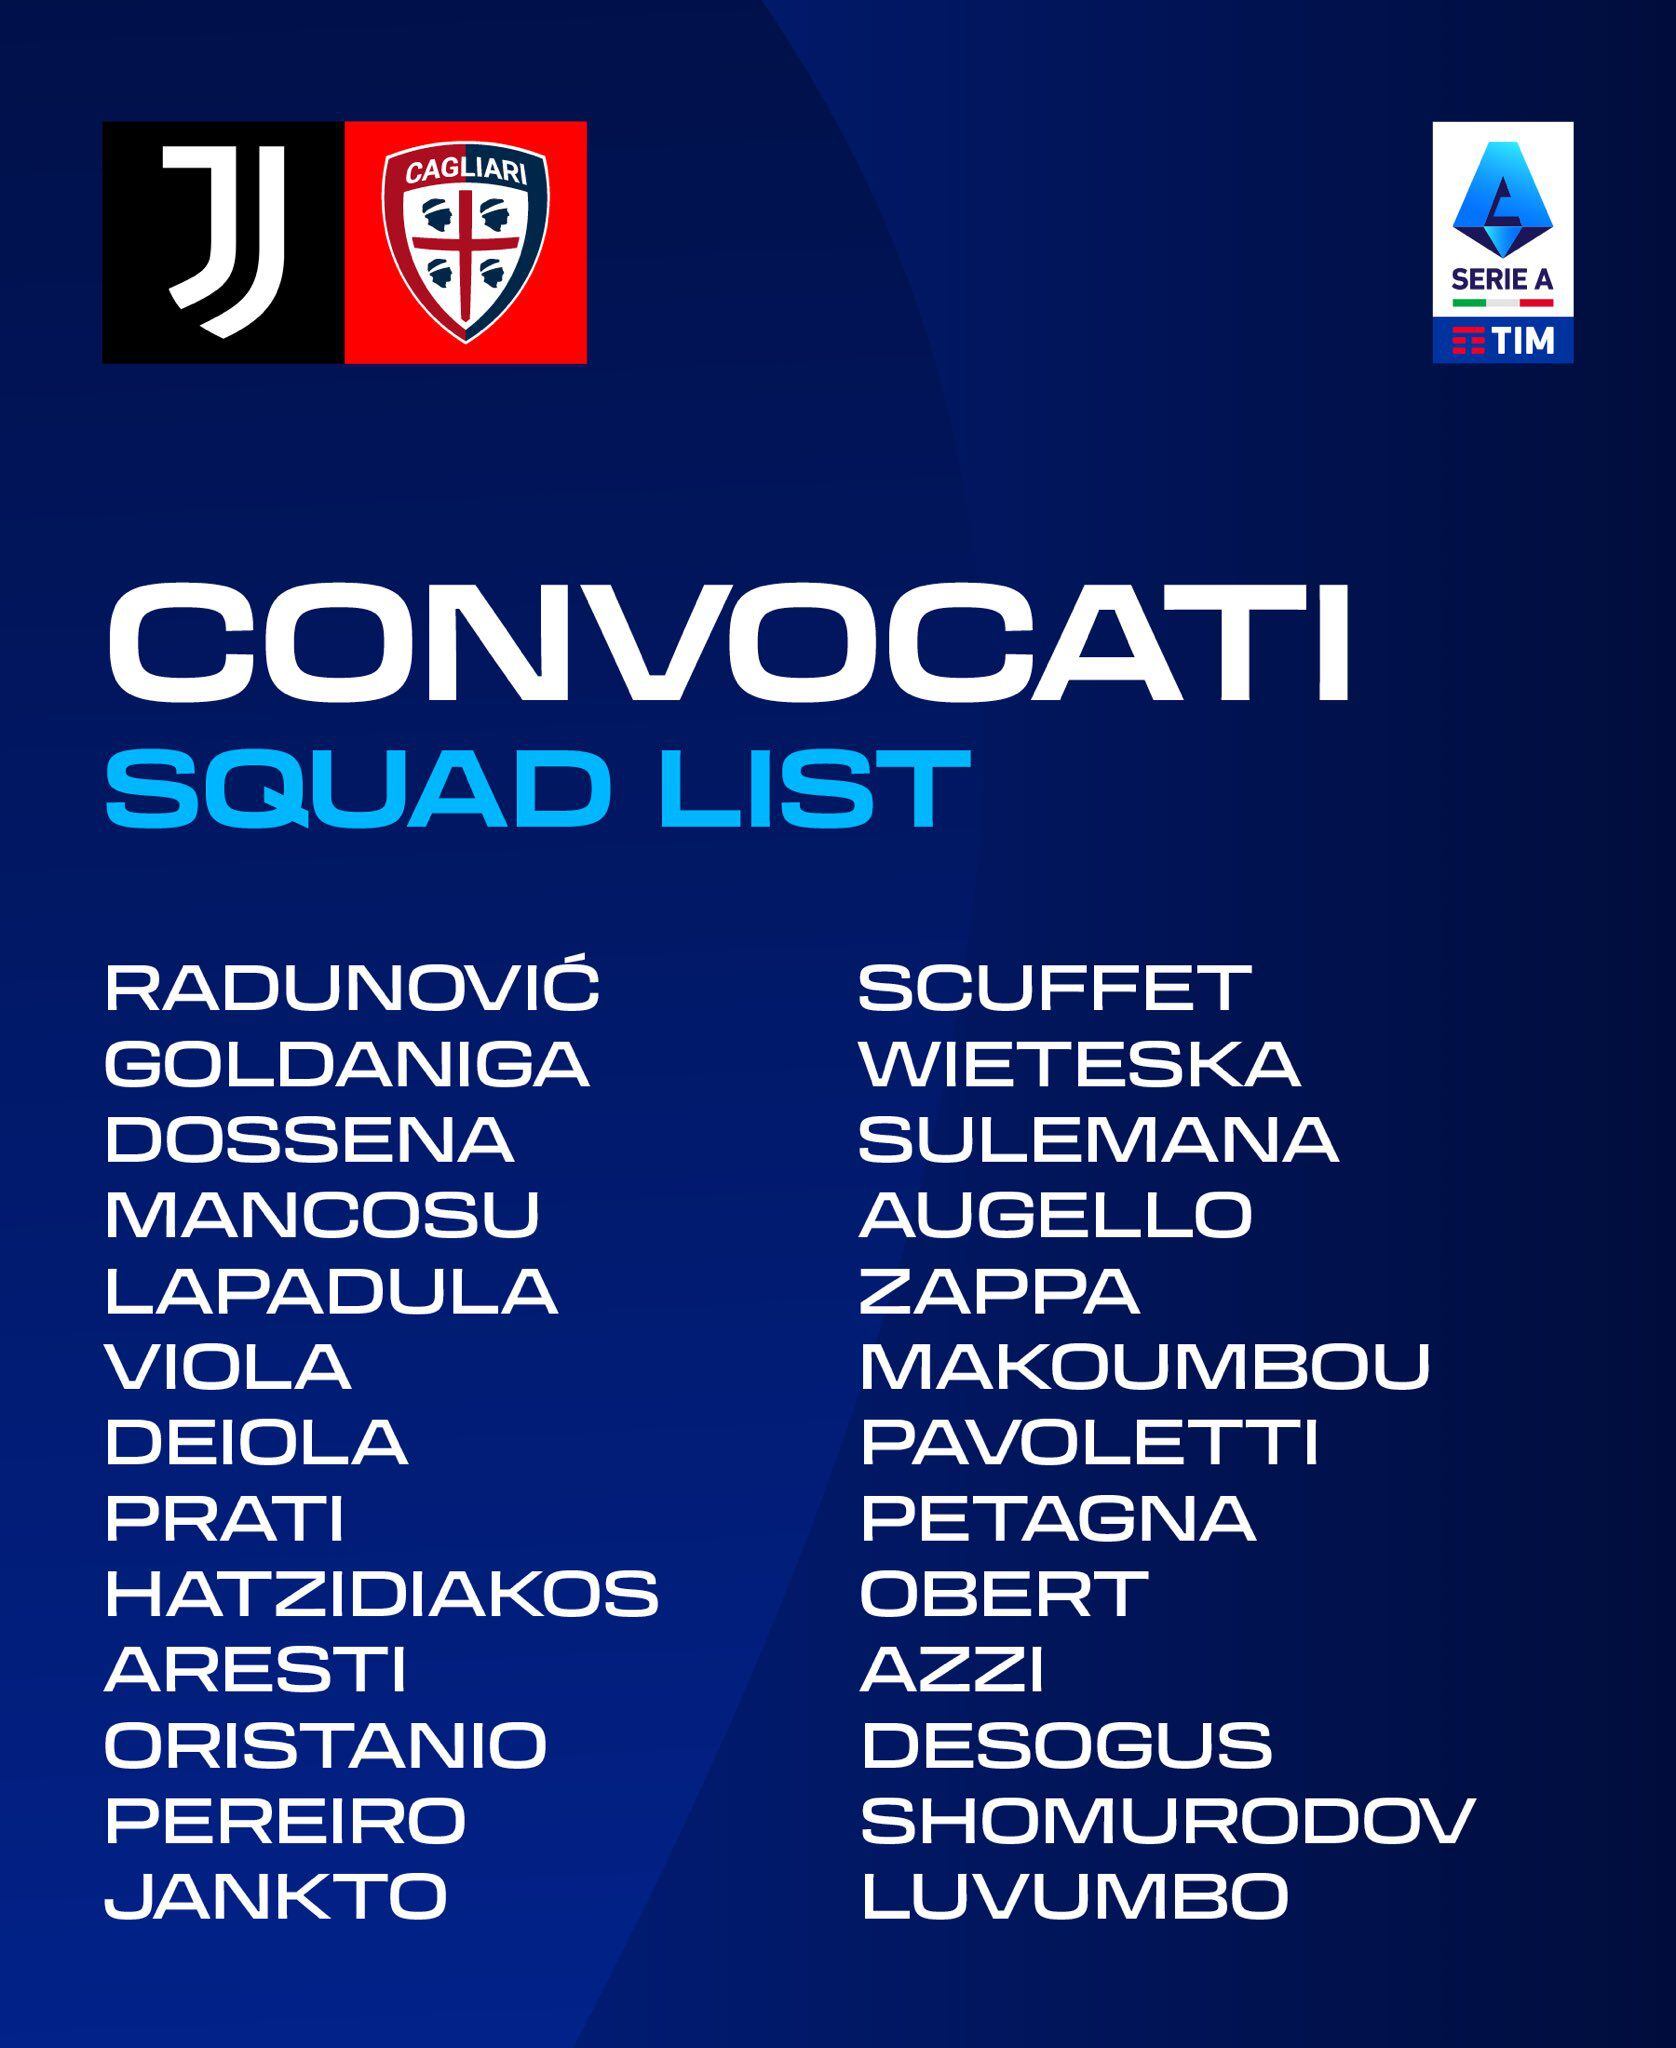 La lista de convocados de Cagliari, con Gianluca Lapadula, para enfrentar a Juventus.